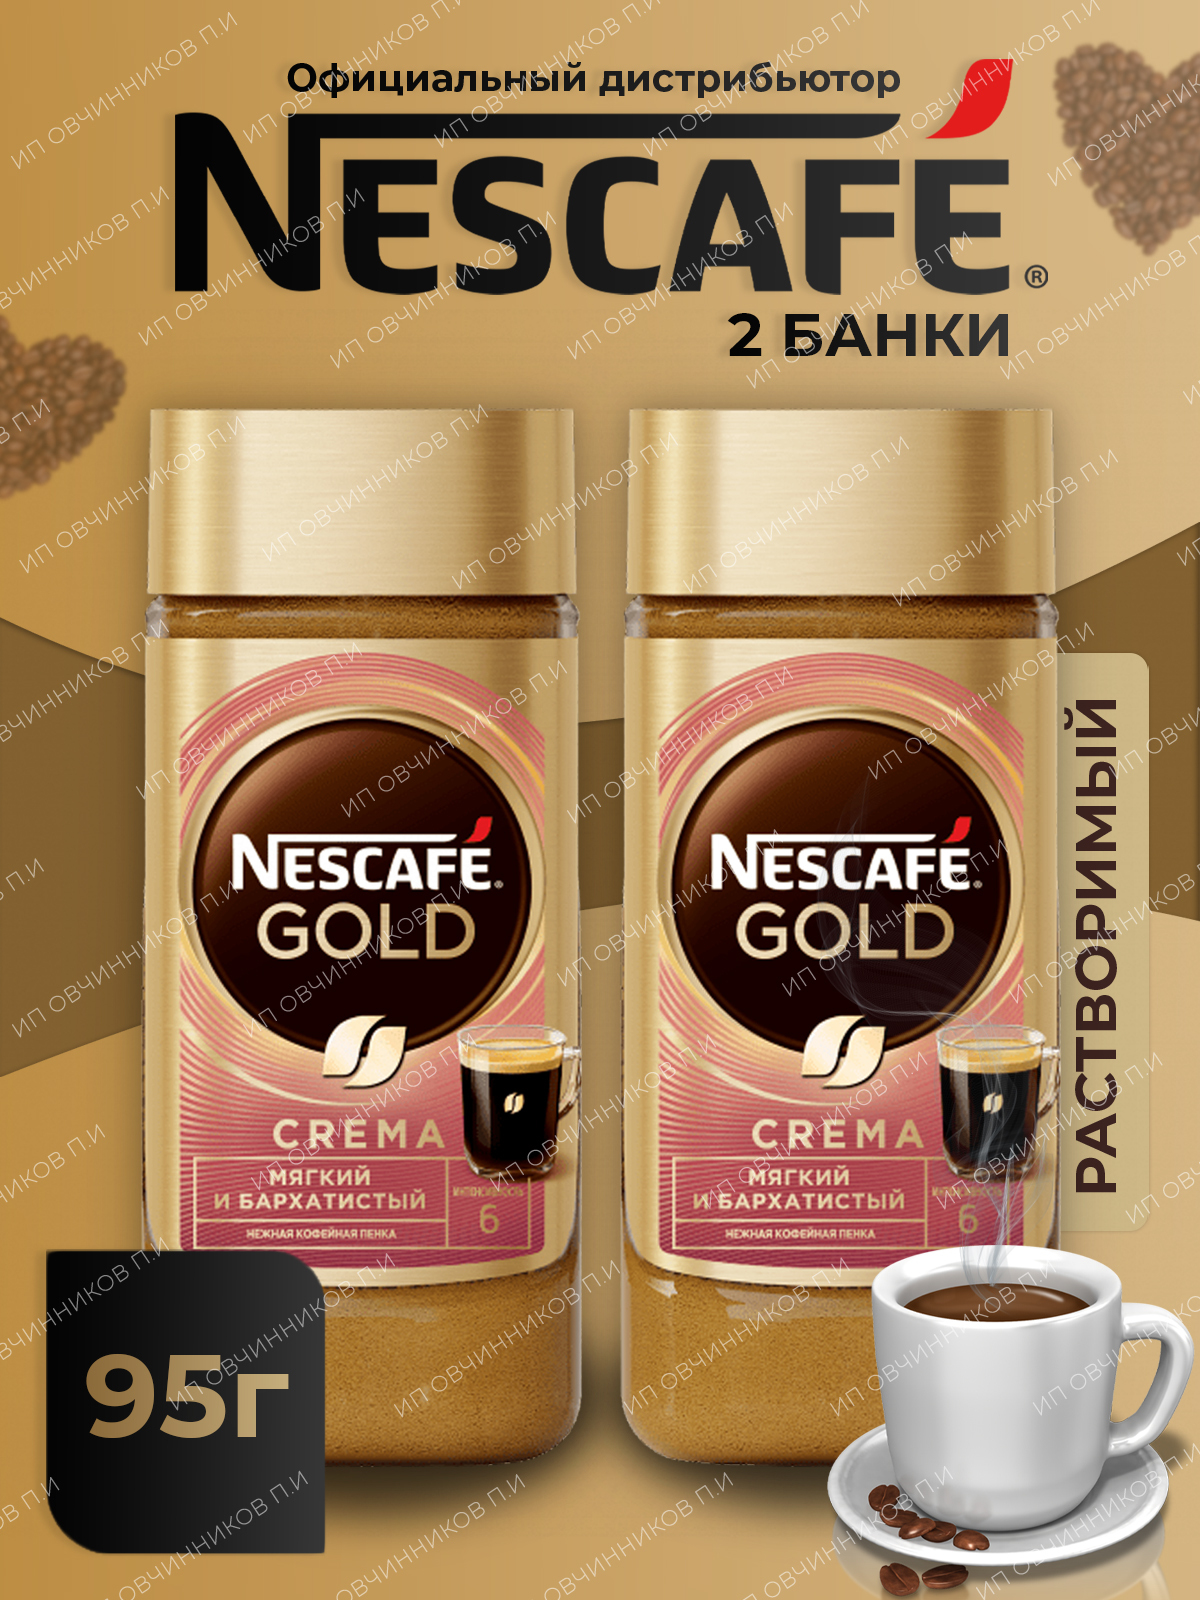 Кофе нескафе спб. Кофе Nescafe Gold crema. Кофе Нескафе Голд крема. Кофе Нескафе Голд 95г. Кофе Nescafe Gold крема растворимый.